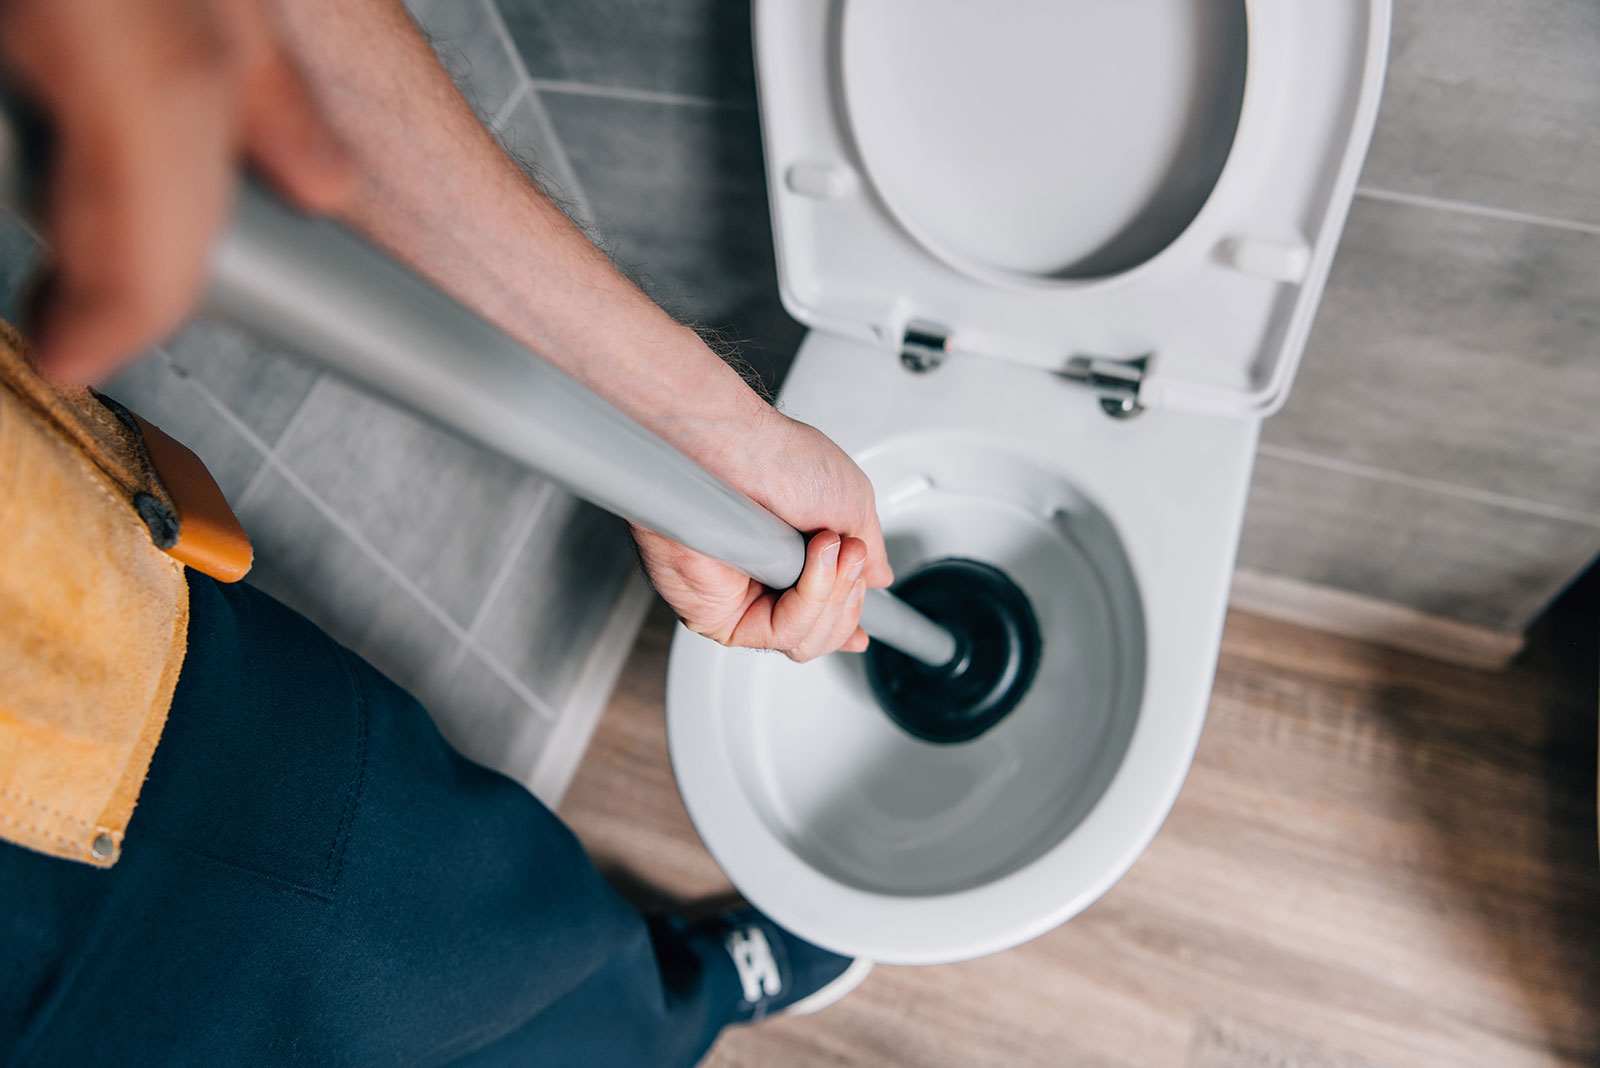 Squat pan toilet repair